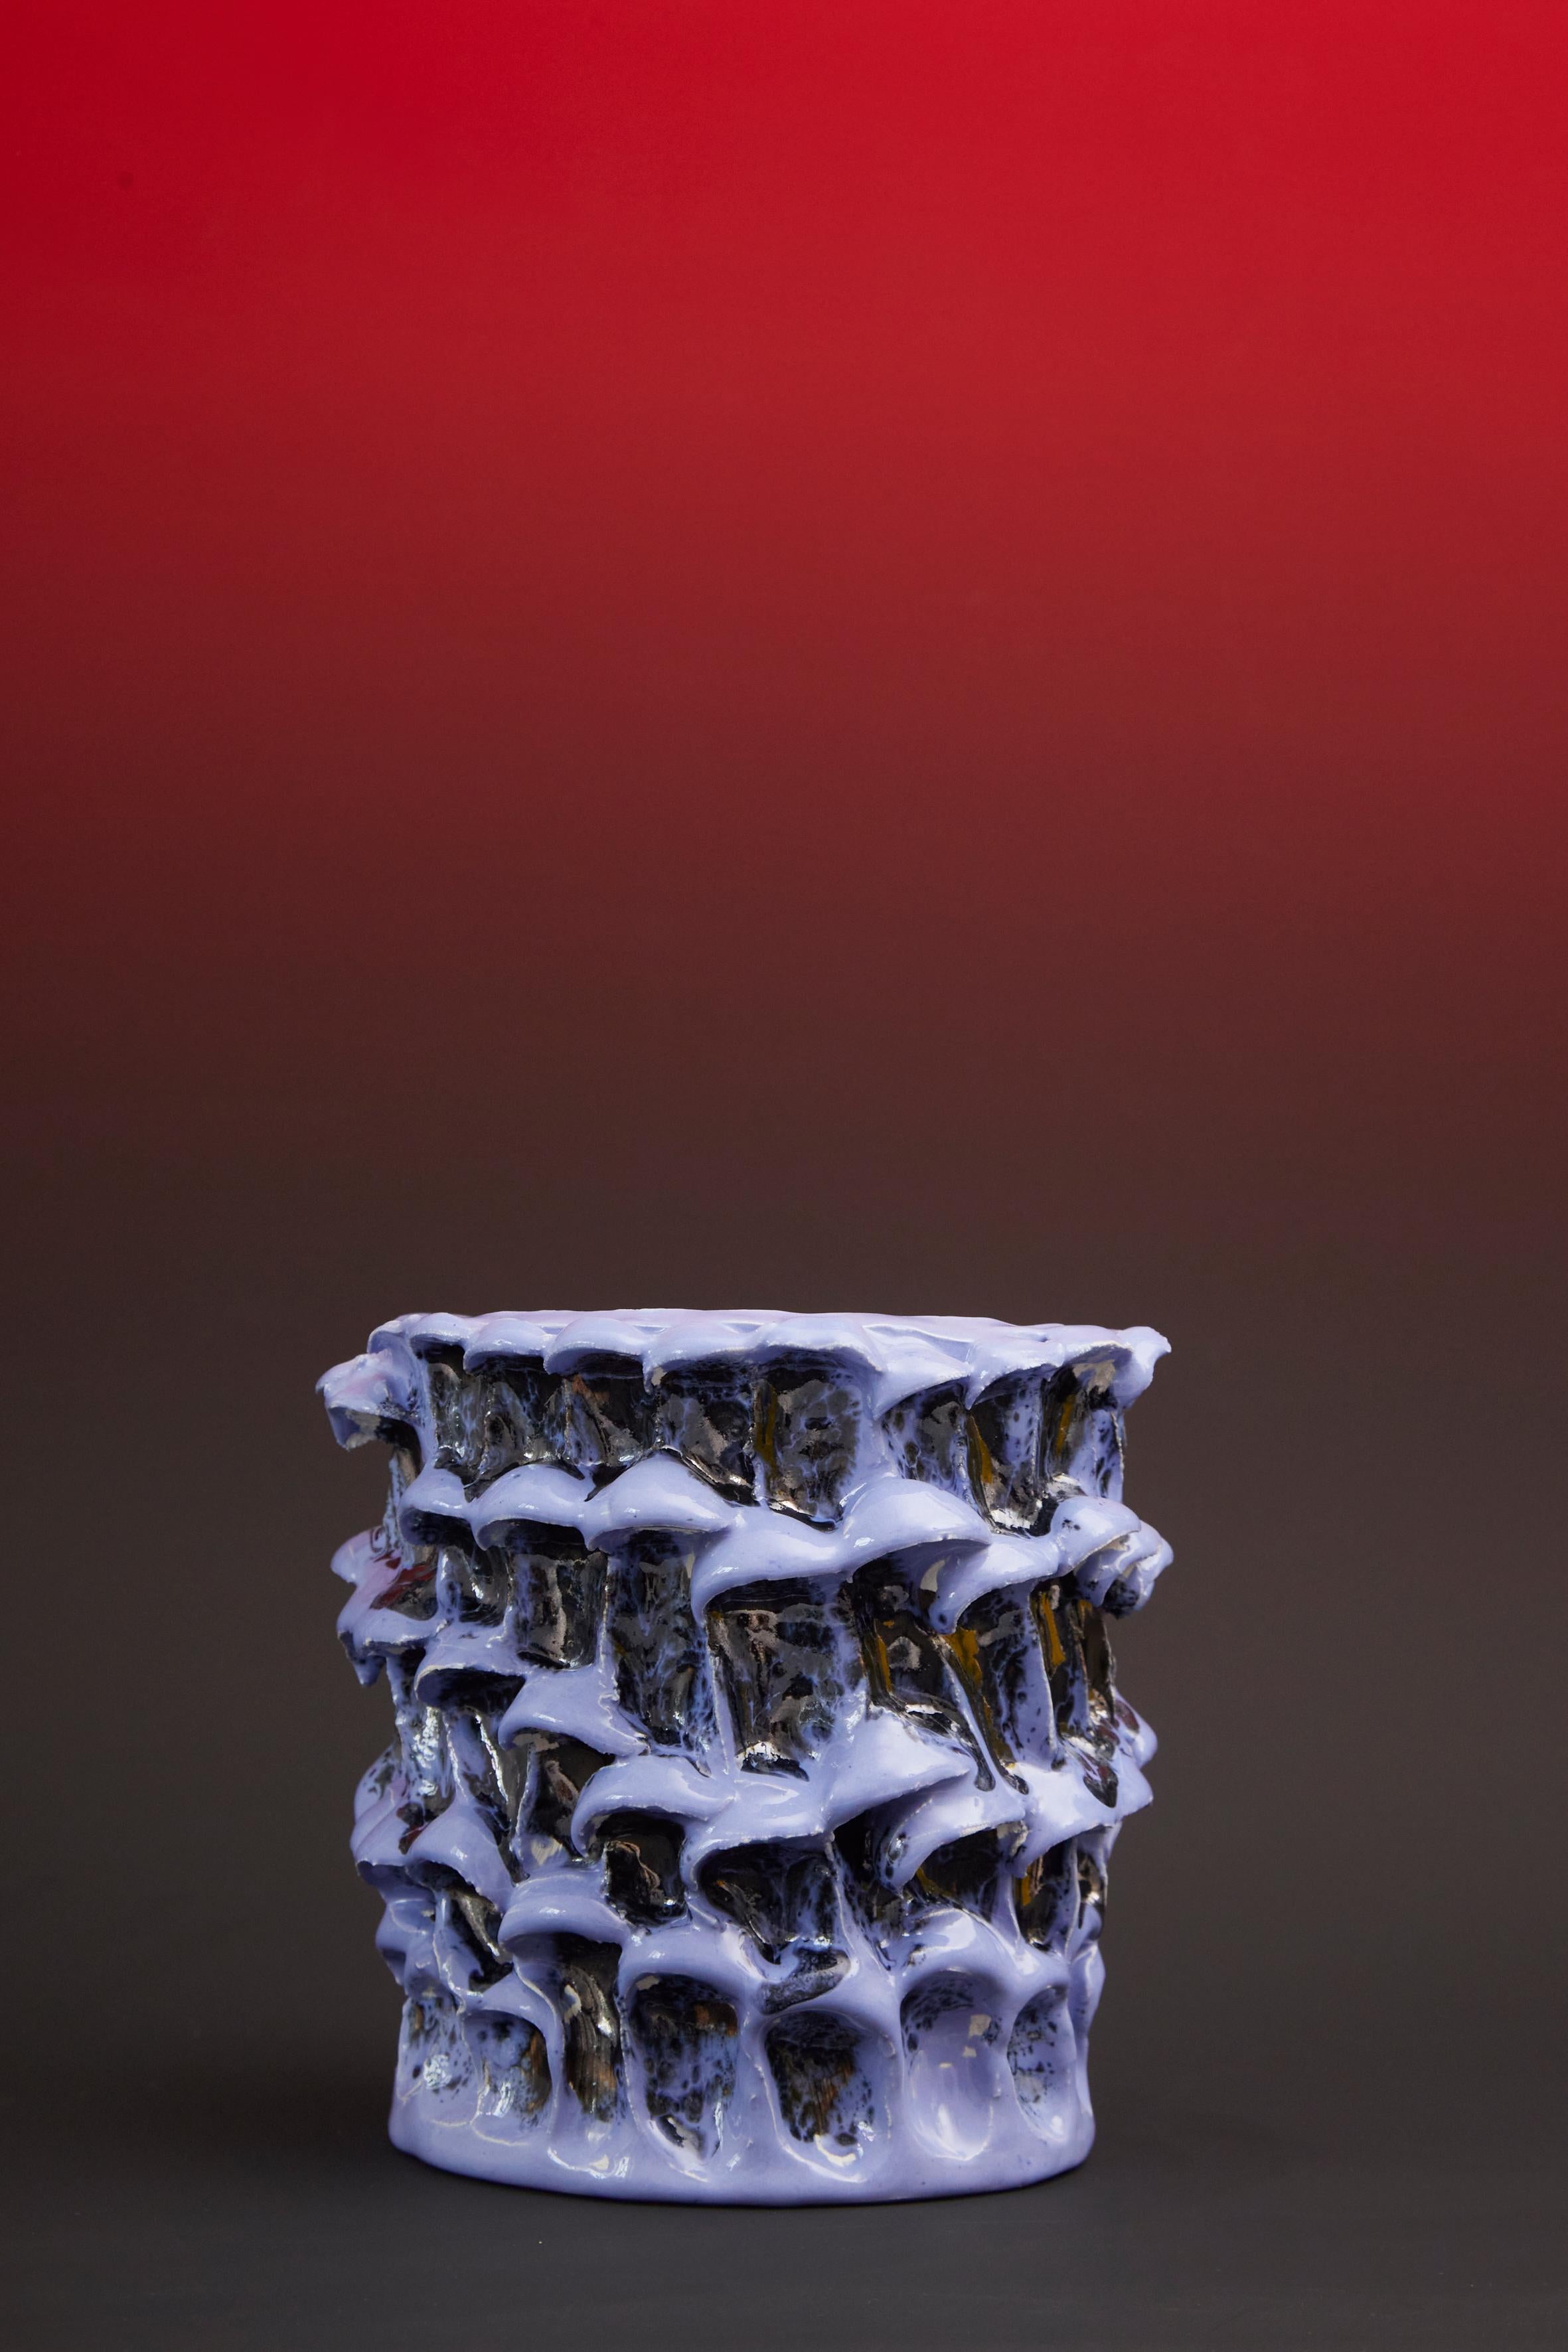 Vase Onda, petit, en lavande métallisée n. 01 / 20 série numérotée
Pièce unique faite à la main
Faïence émaillée de Daria Dazzan
Faïence, émaux
17 X 18 cm ab.

Vase en faïence fait à la main par Daria Dazzan, pièce unique, numérotée.
Daria Dazzan